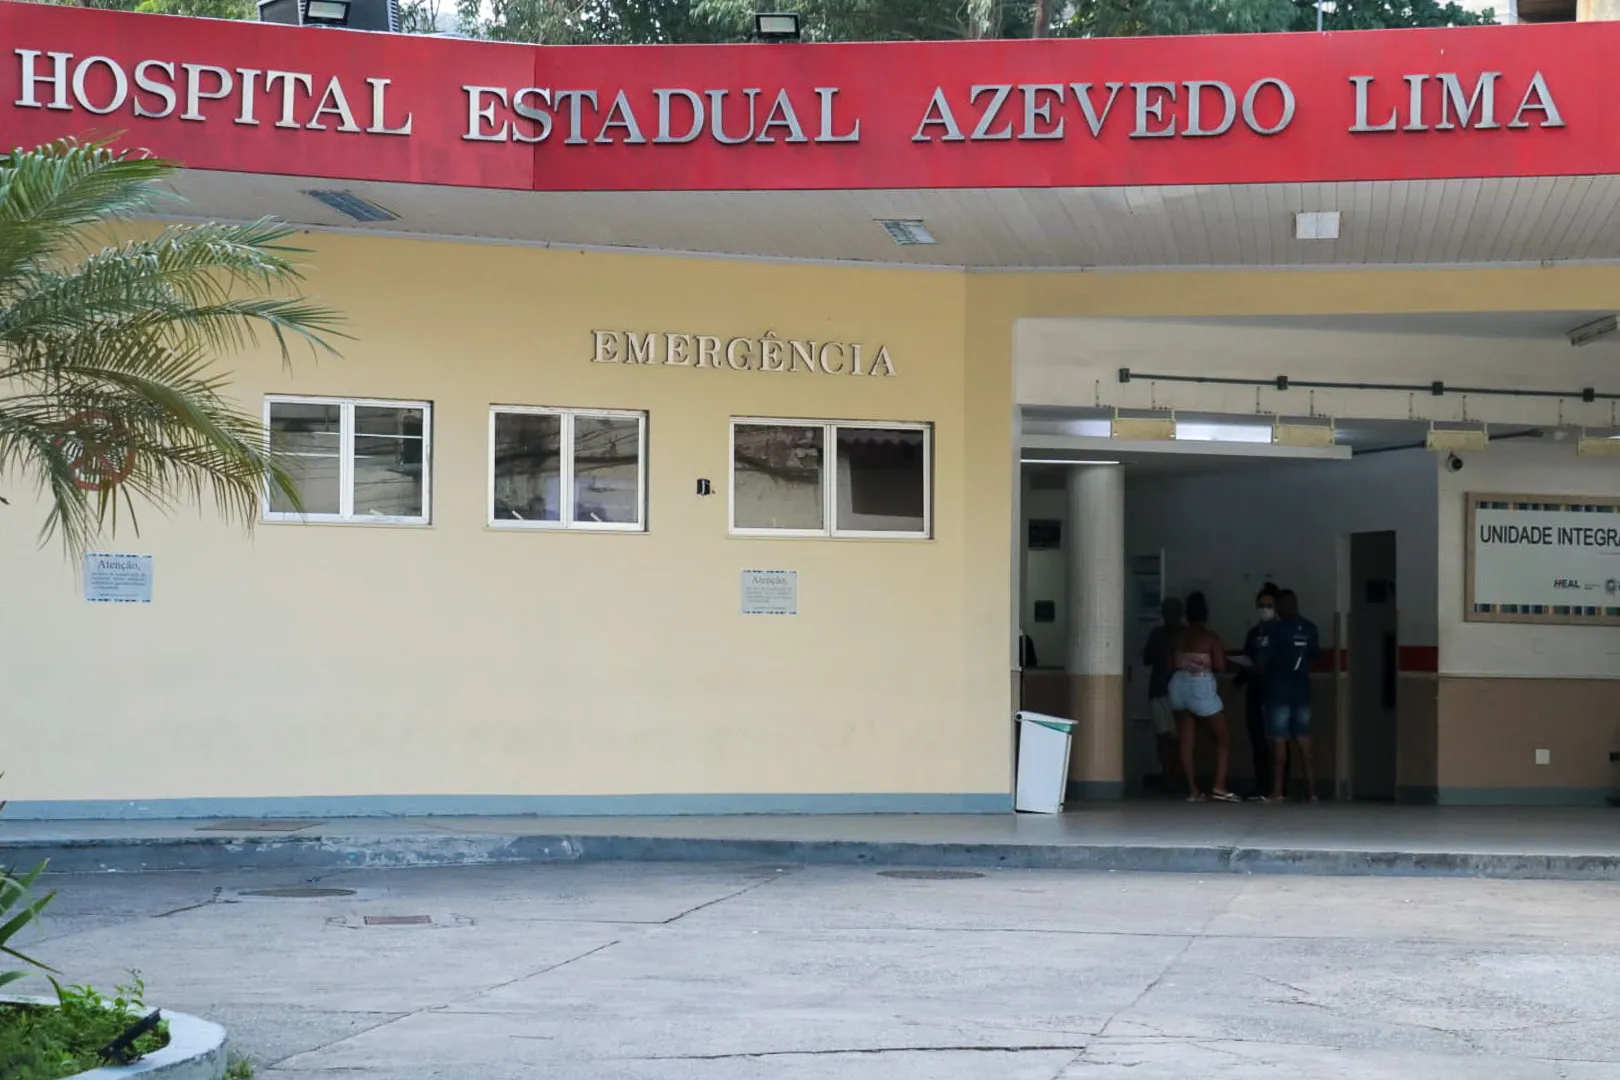 Os feridos foram levados para o Hospital Estadual Azevedo Lima (Heal), no Fonseca